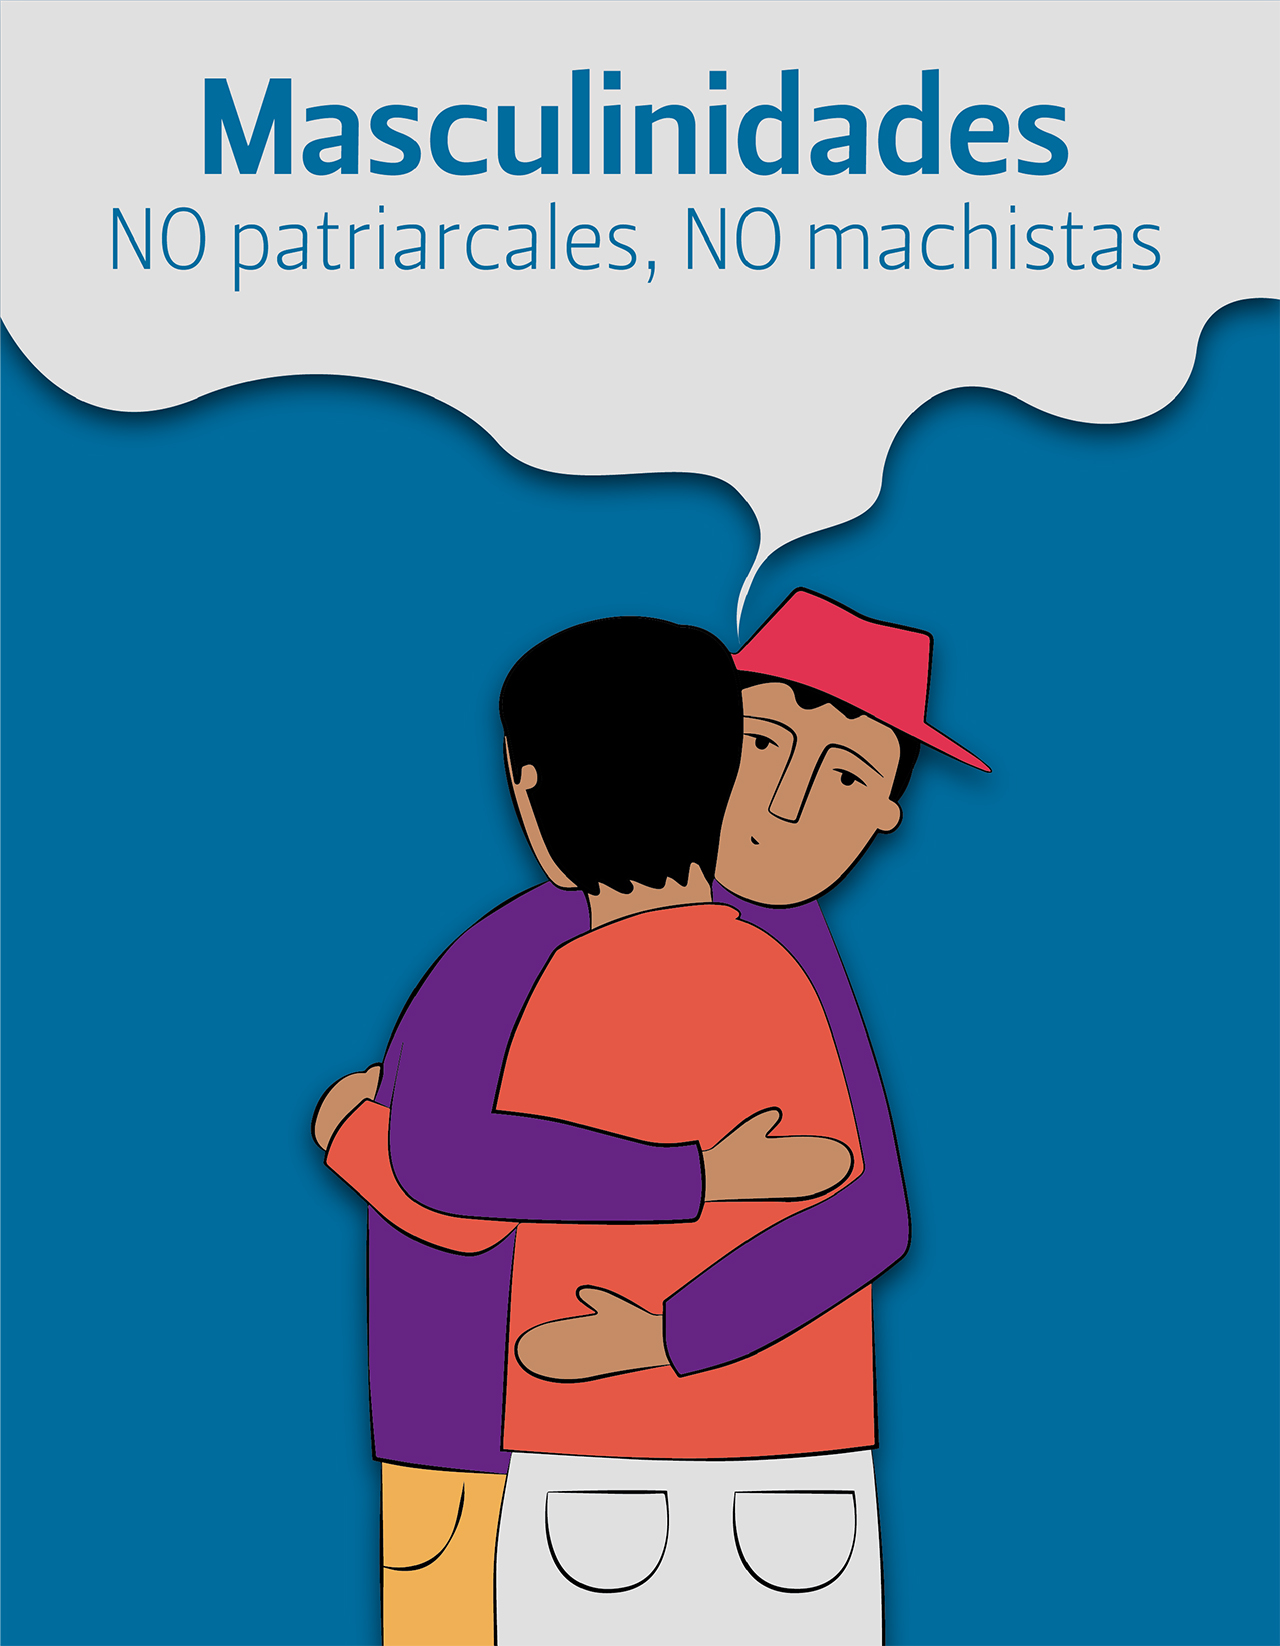 Las Masculinidades NO patriarcales, NO Machistas se han potenciado por la pandemia de el COVID-19 en las zonas rurales de Ecuador. 